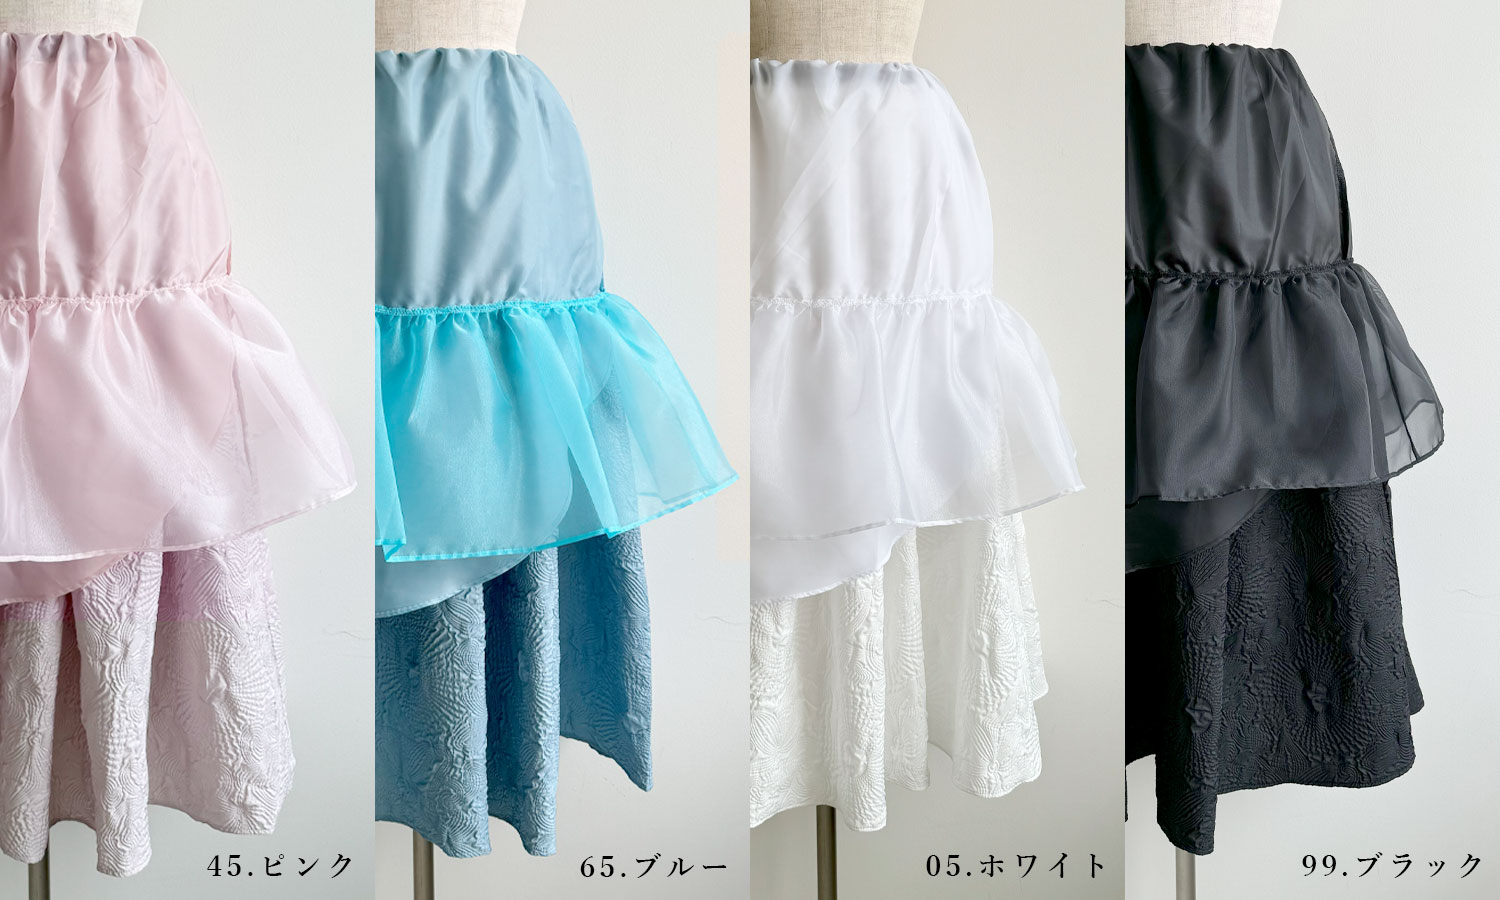 神戸・山の手エンボススカートのミモレ丈はふんわりシルエットにるすためのパニエがついています